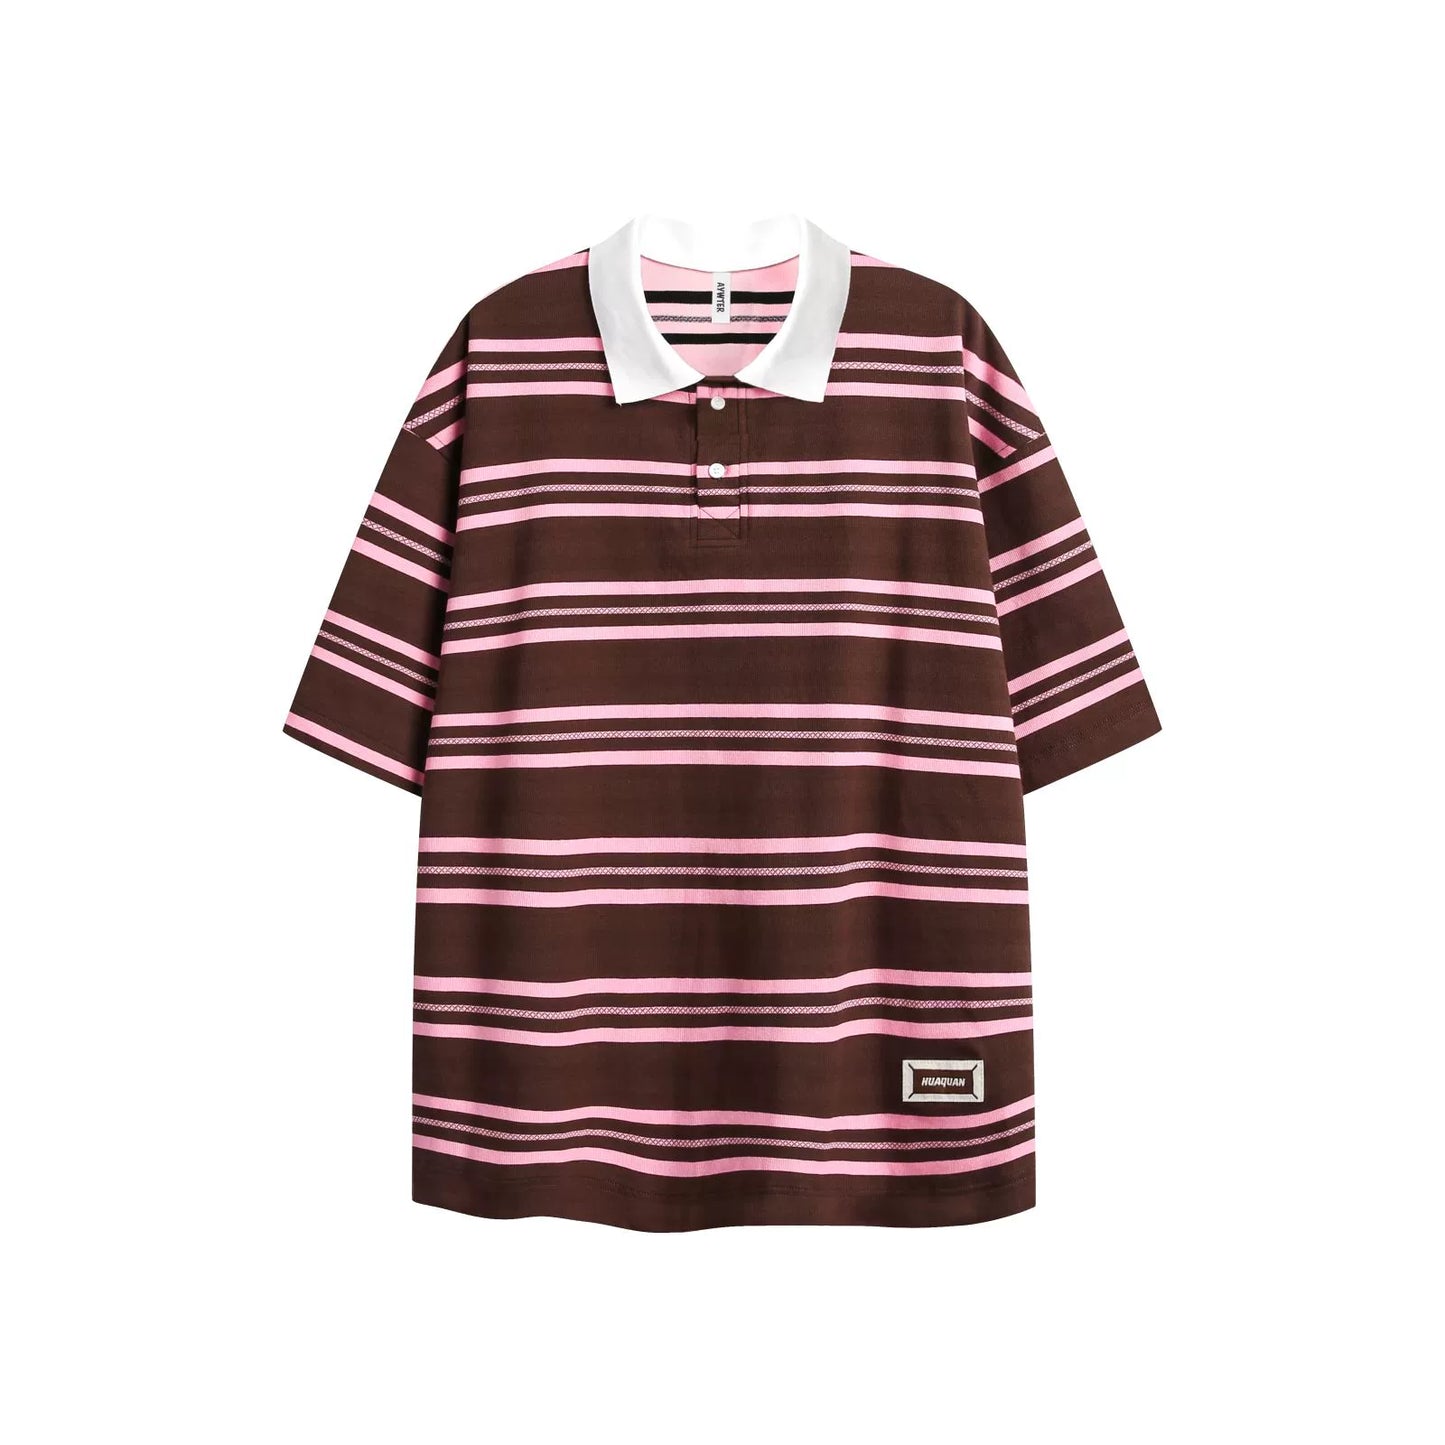 Retro Striped Contrast Polo Shirt